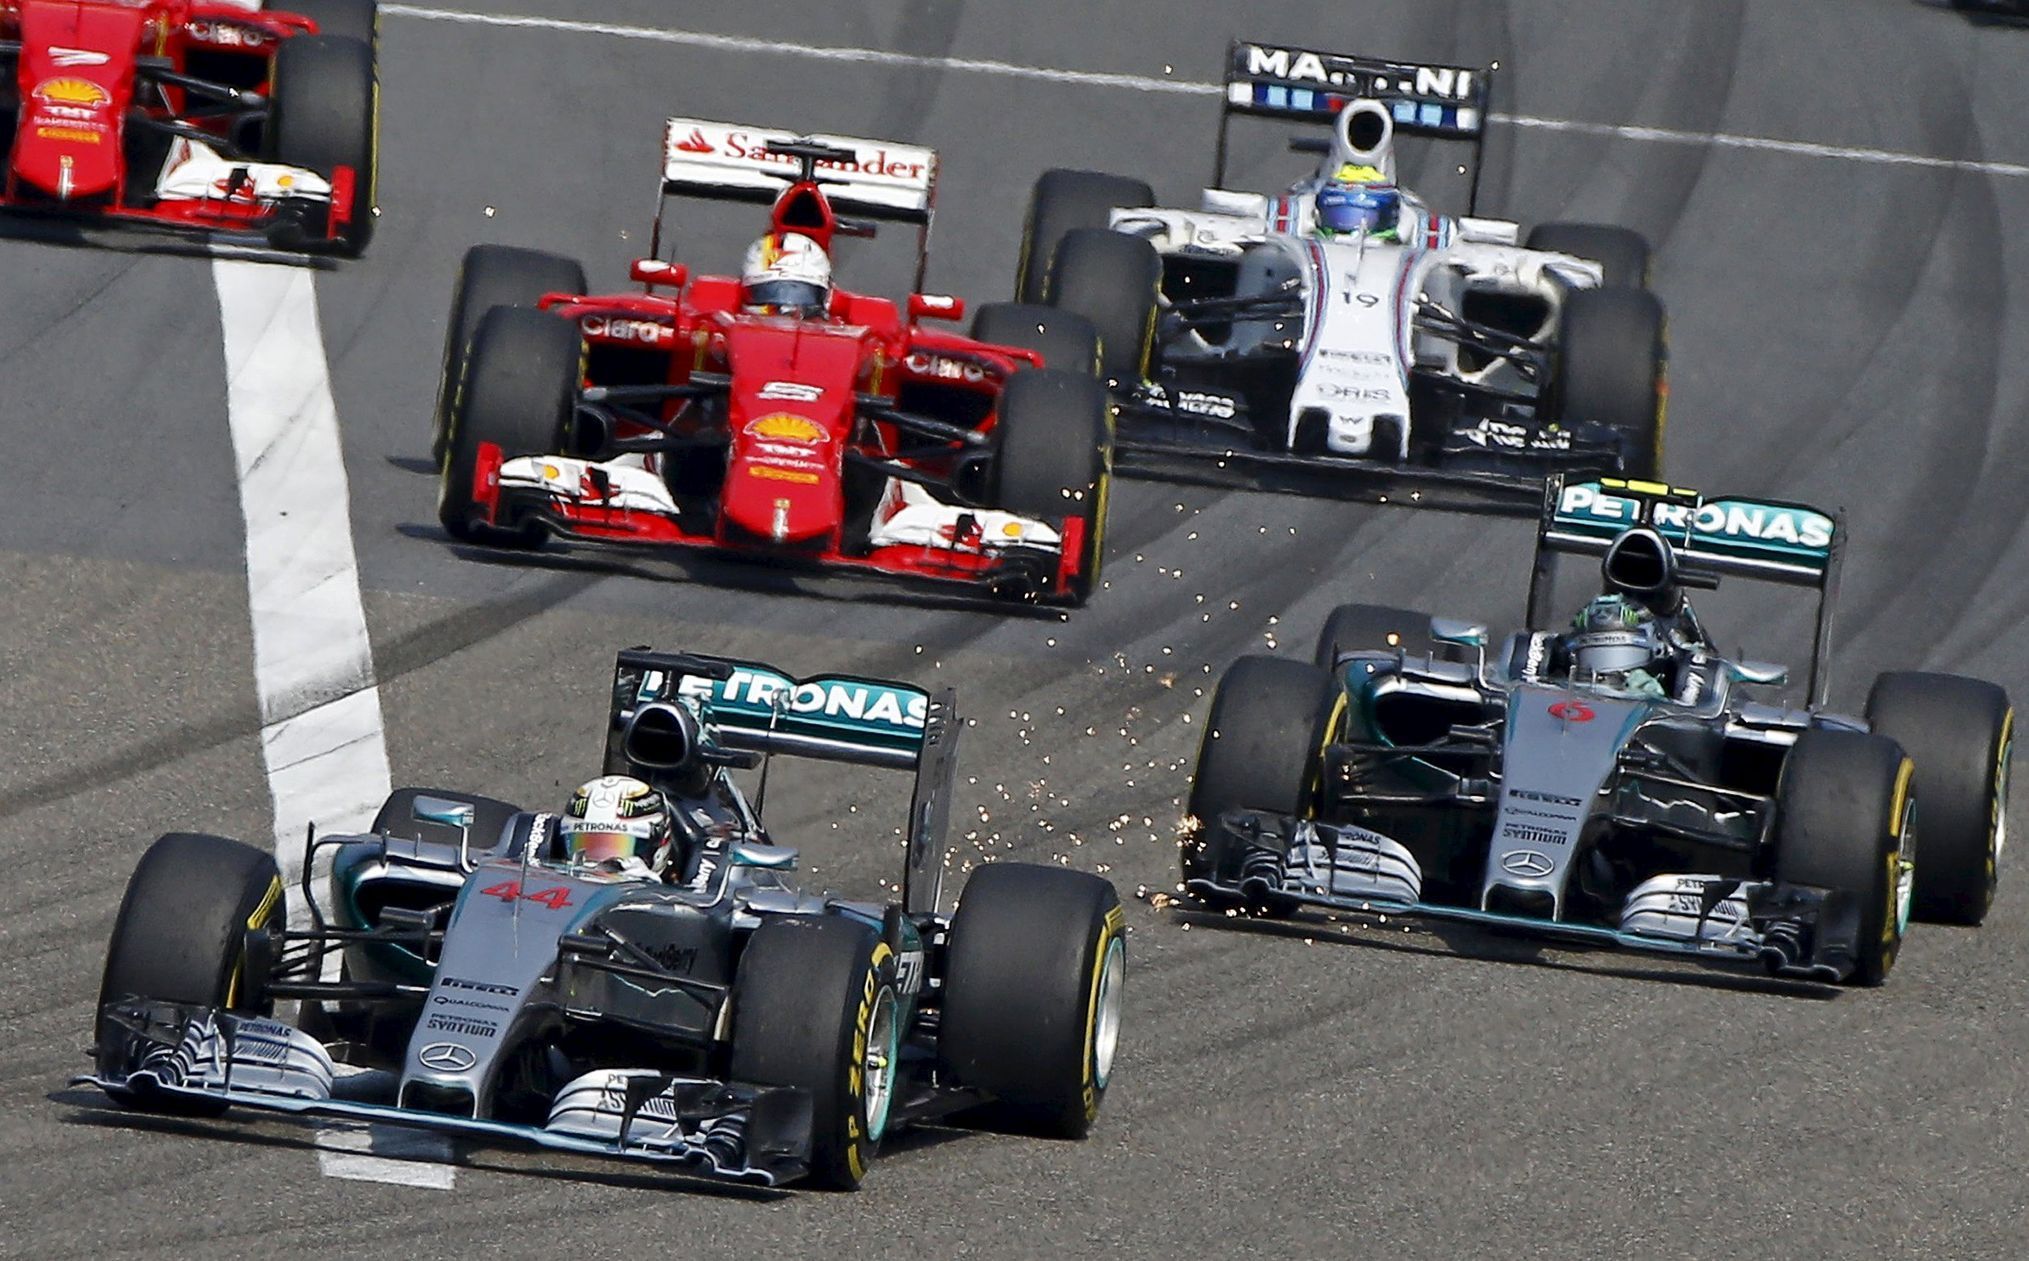 F1, VC Číny: Lewis Hamilton, Mercedes; Nico Rosberg, Mercedes; Sebastian Vettel, Ferrari - start